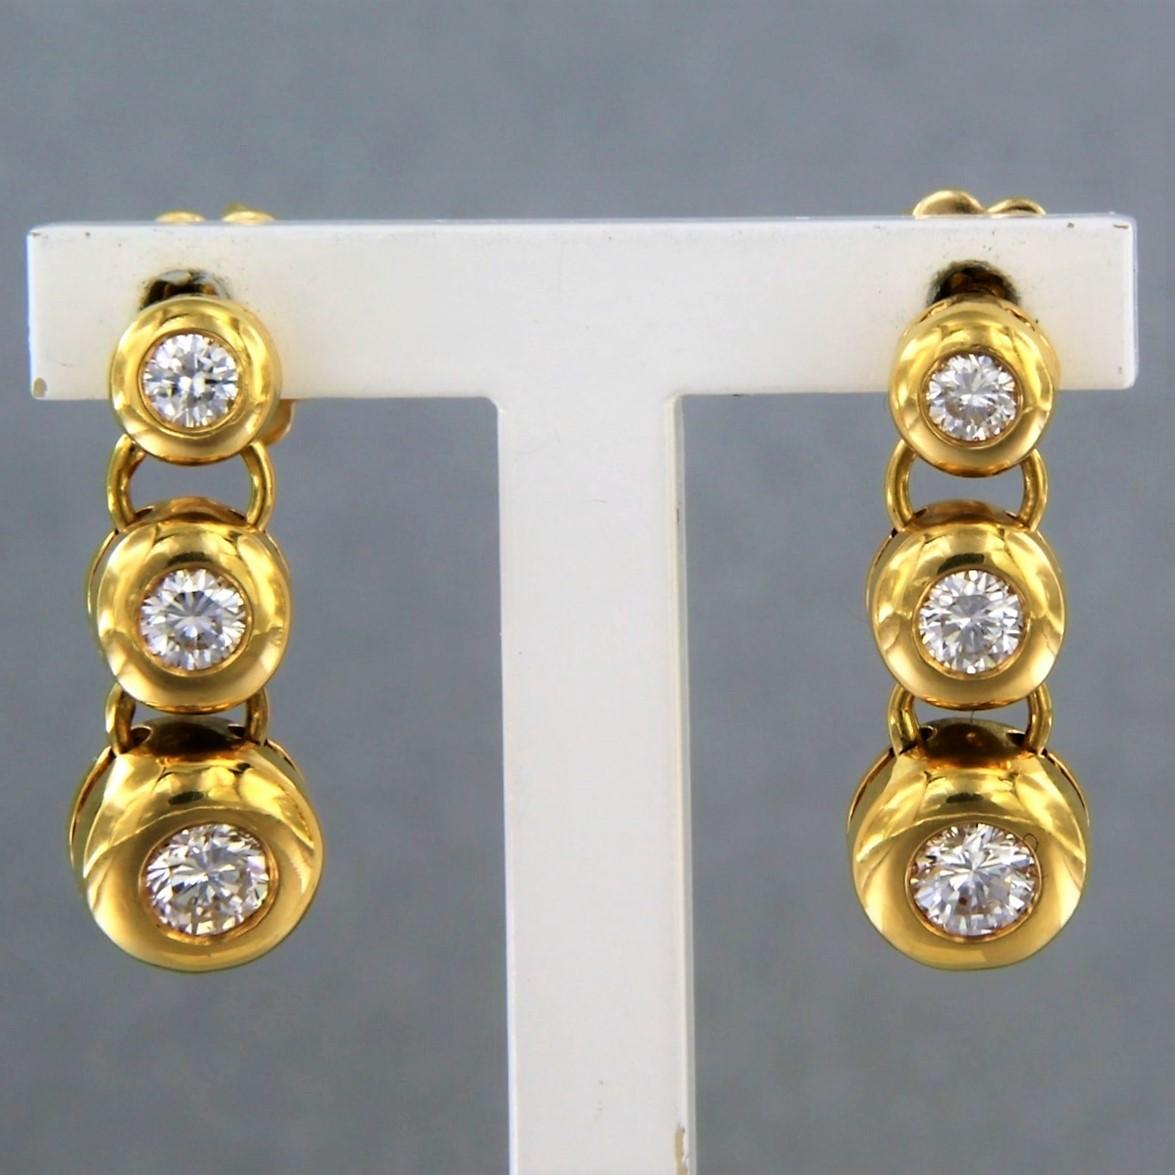 Ohrringe aus 18 Karat Gelbgold mit einem Diamanten im Brillantschliff 0,65 ct - F/G - VS/SI

detaillierte Beschreibung:

Die Größe des Ohrrings beträgt etwa 1,8 cm x 6,6 mm.

Gesamtgewicht: 6,8 Gramm

besetzt mit:

- 6 x 2,4 mm - 3,4 mm geschliffene